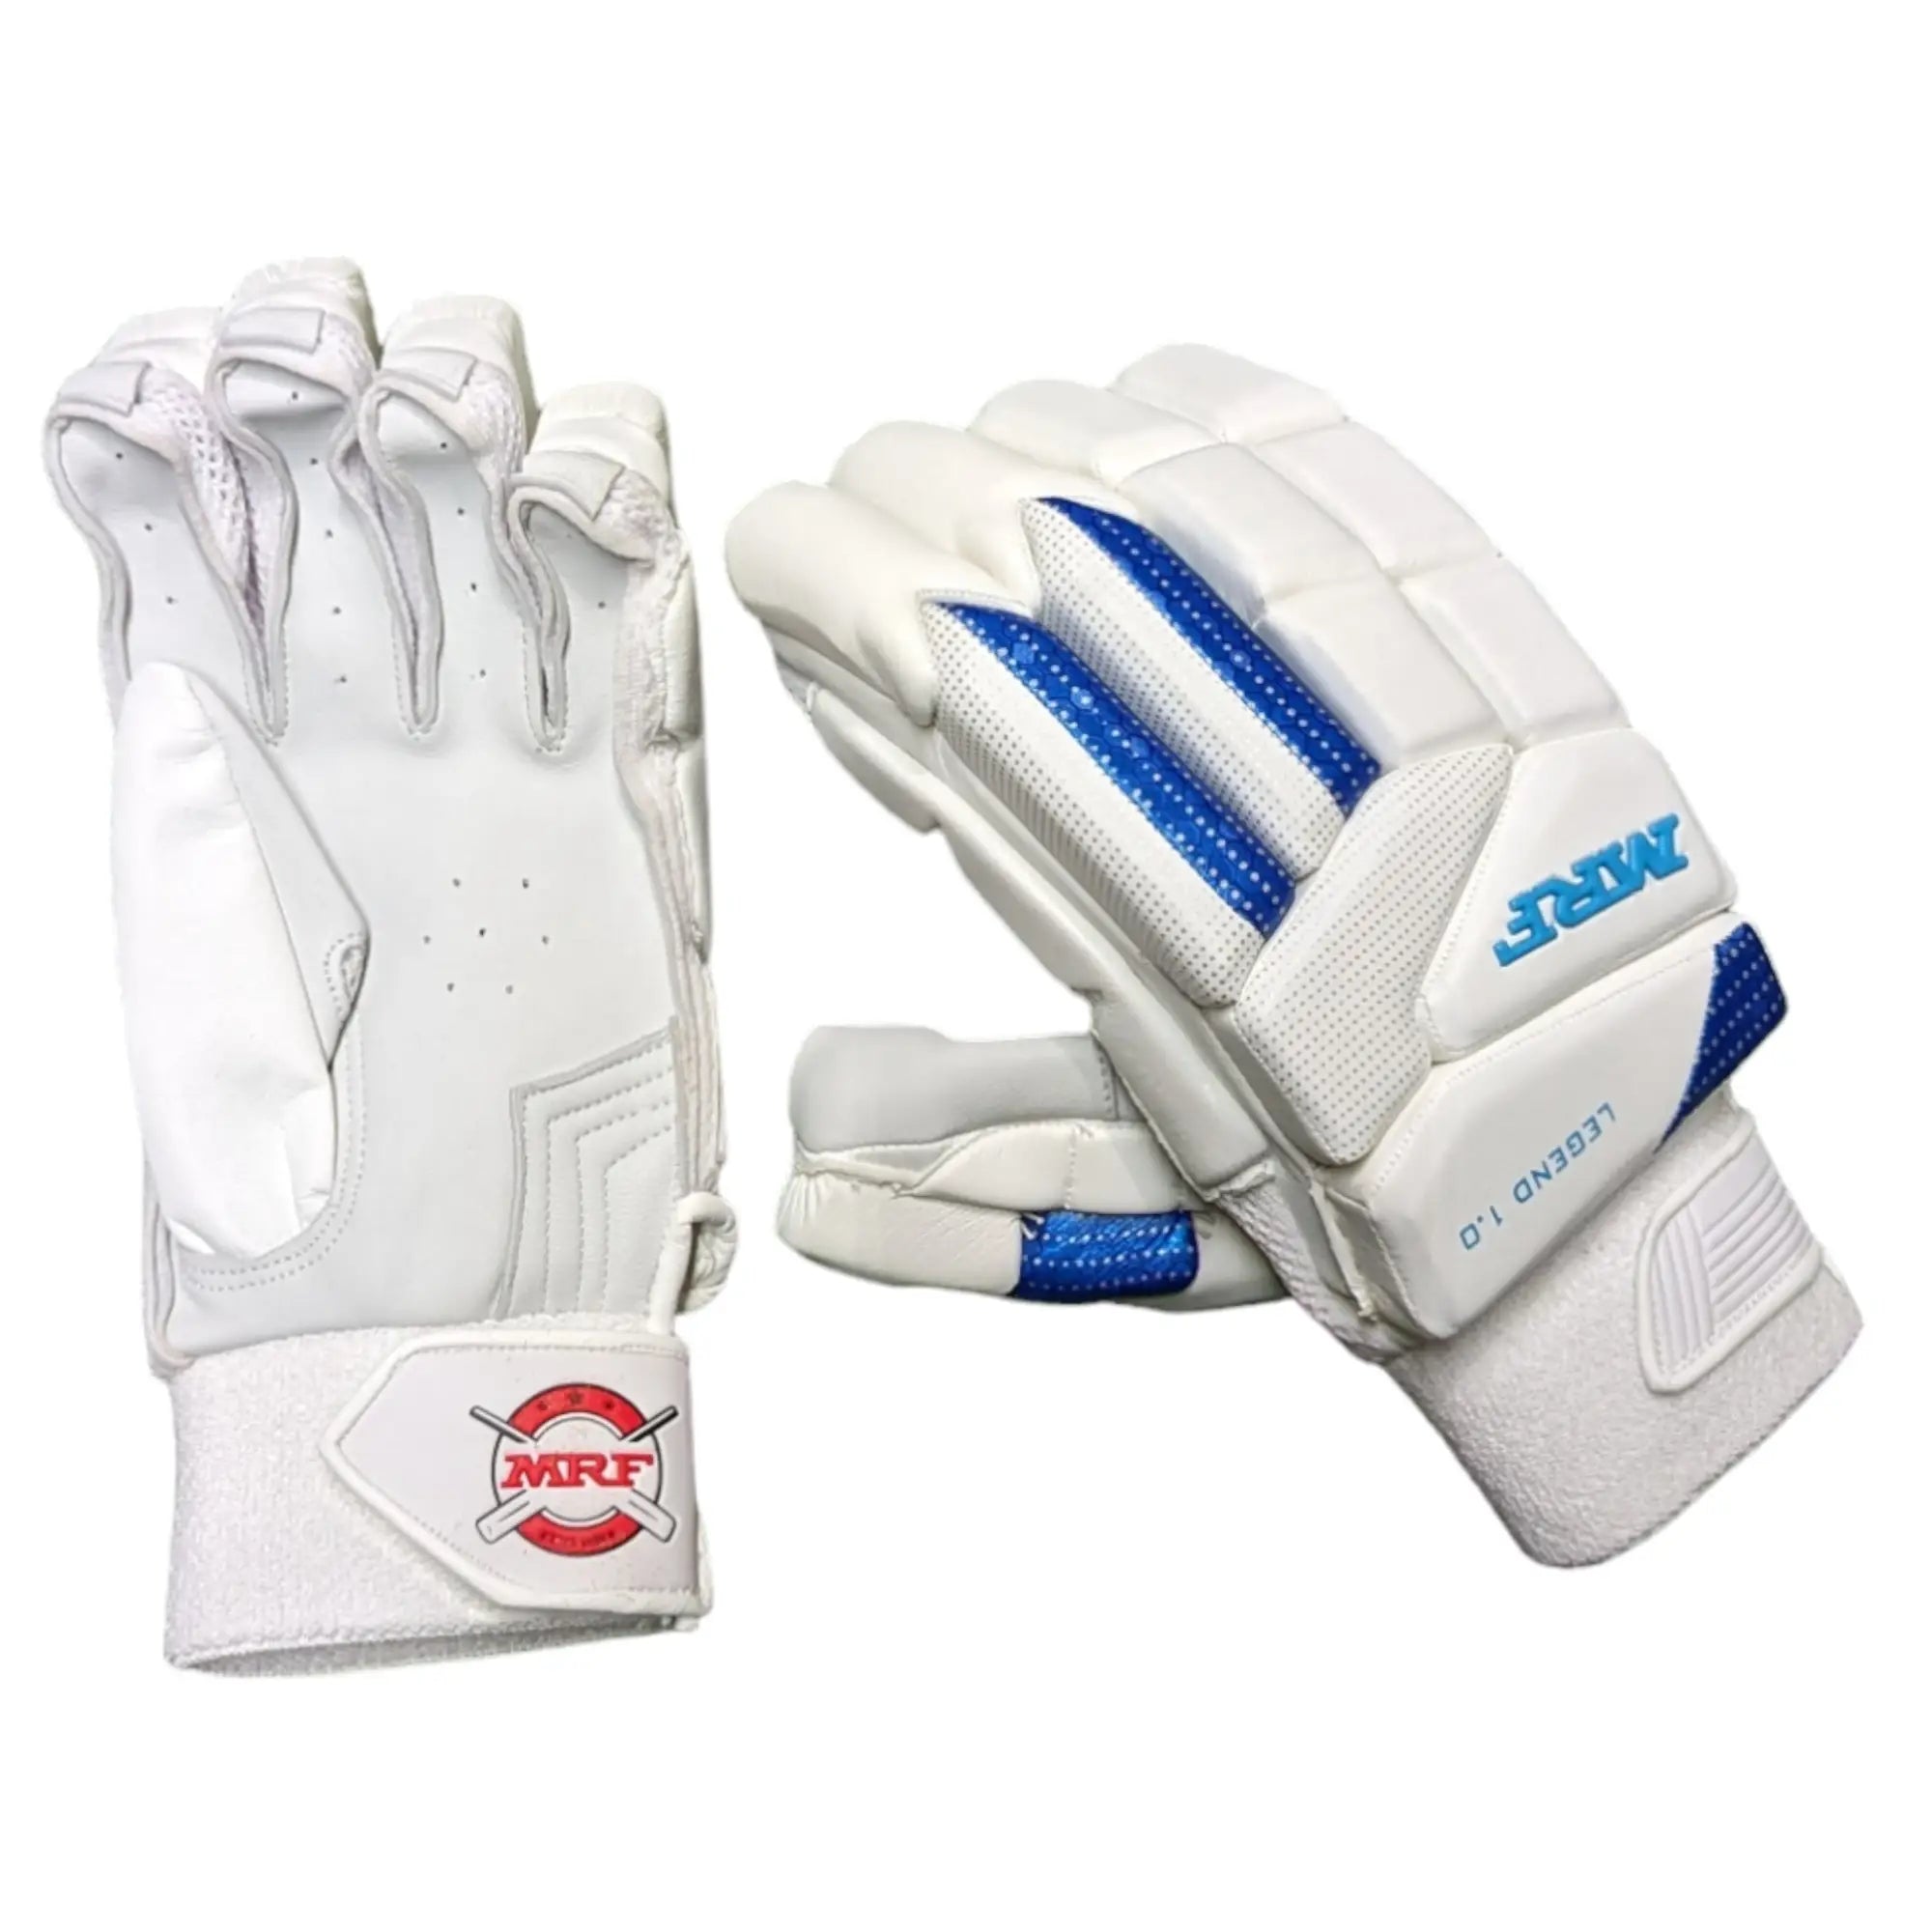 MRF Legend VK 18 1.0 Cricket Batting Gloves - GLOVE